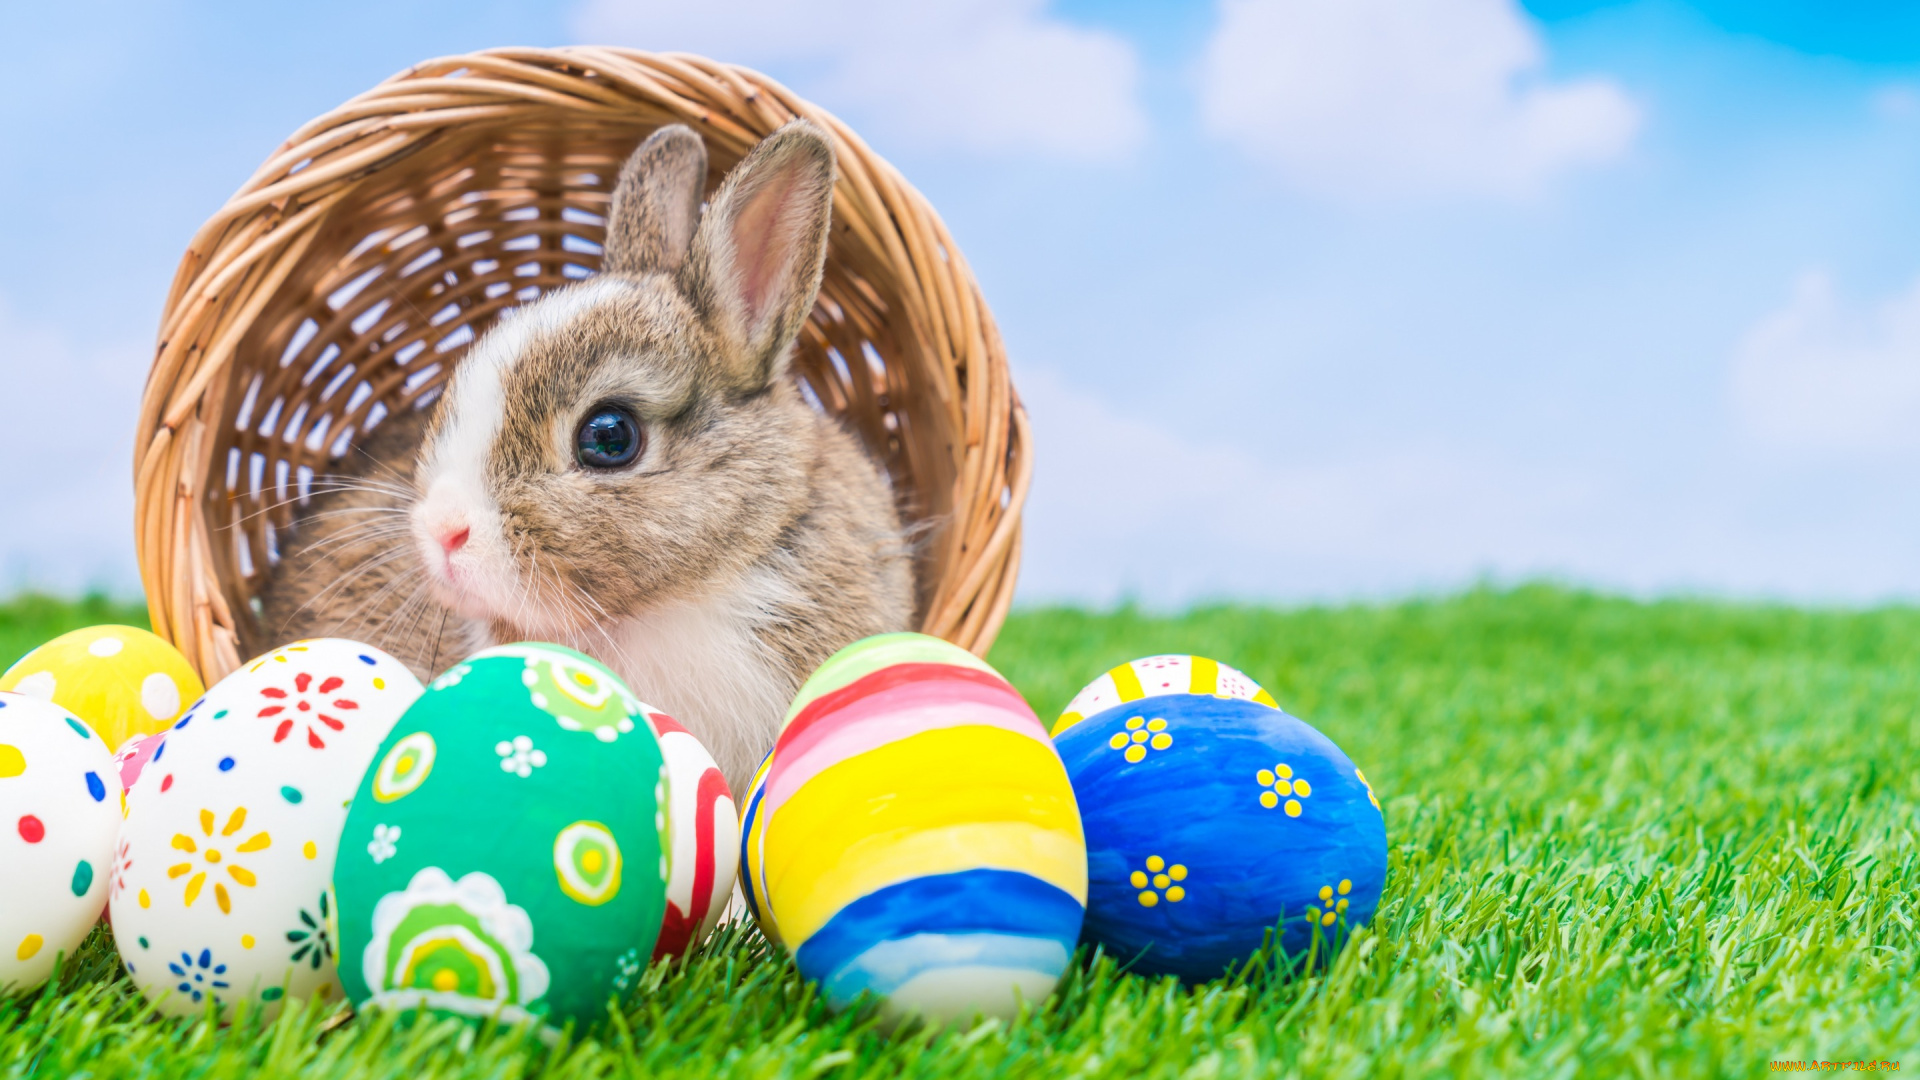 животные, кролики, , зайцы, яйца, крашенные, праздник, кролик, корзина, пасха